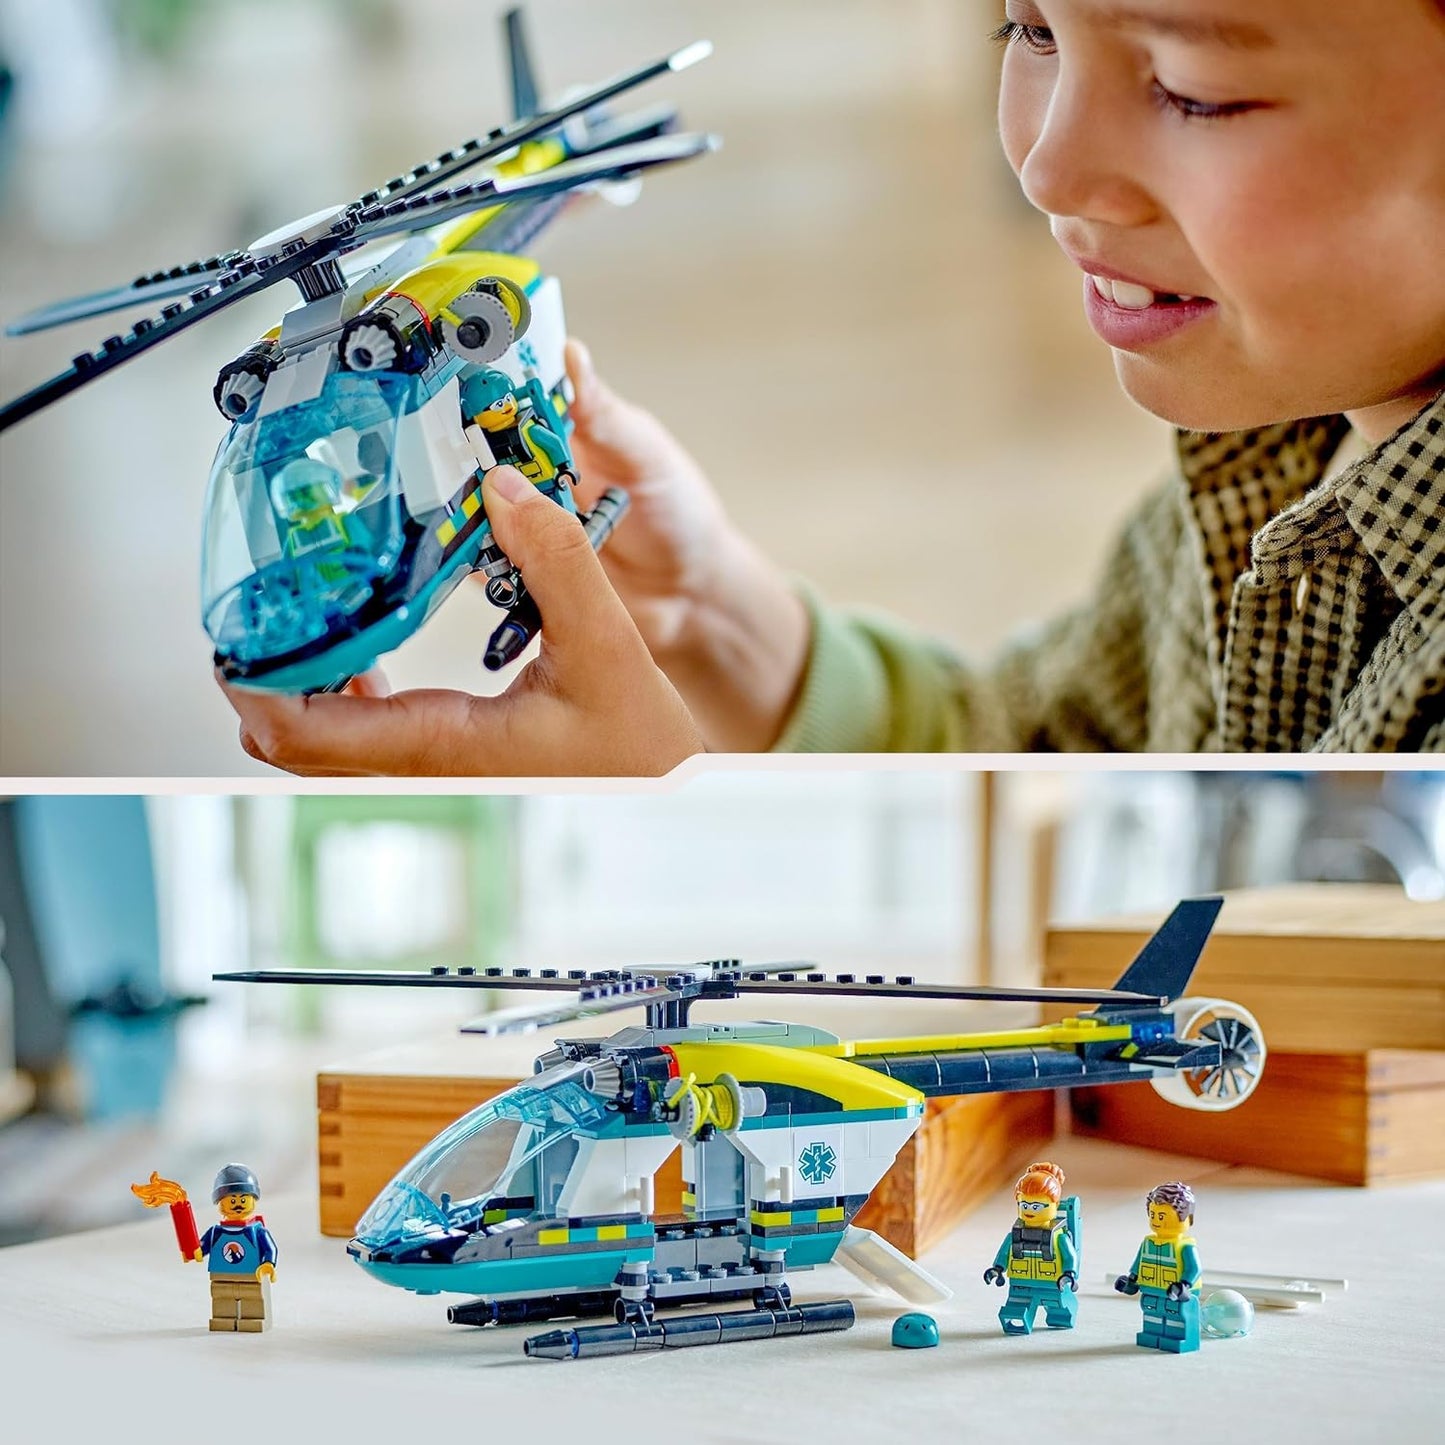 LEGO Brinquedo de helicóptero de resgate de emergência urbano para meninos e meninas de 6 anos ou mais, conjunto de construção de veículos com guincho, rotores giratórios e 3 minifiguras para brincadeiras imaginativas, presente de aniversário